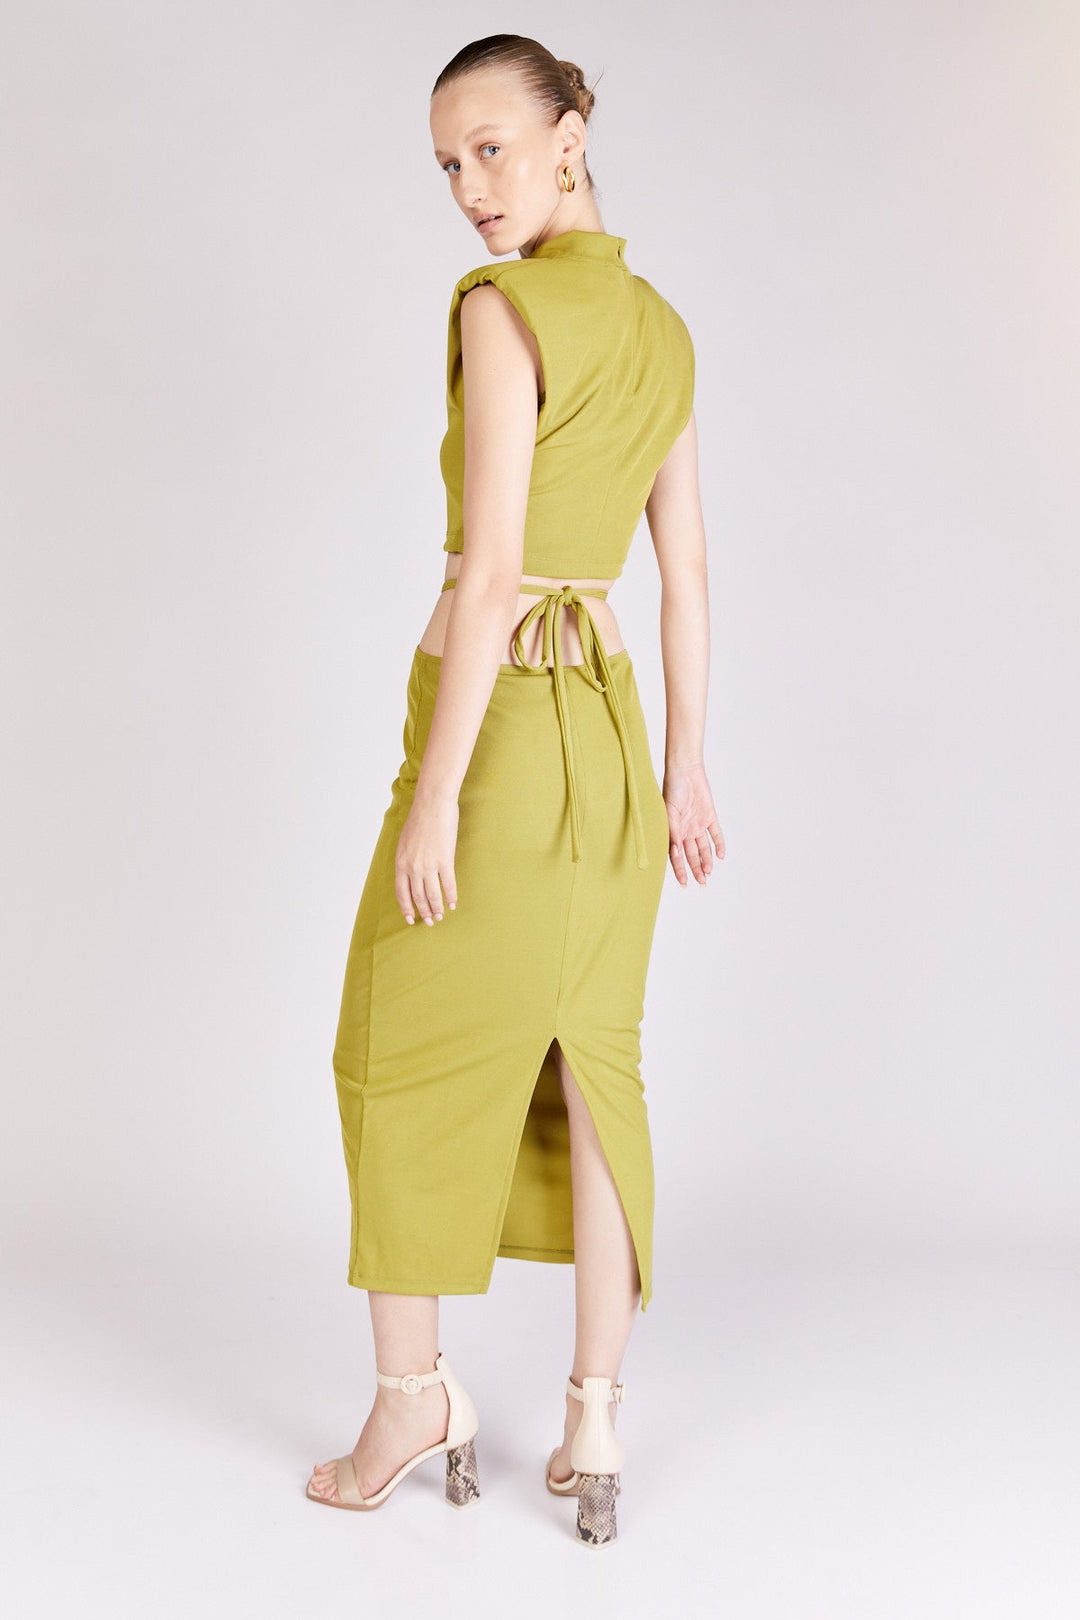 חצאית לוטי בצבע זית - Dana Sidi